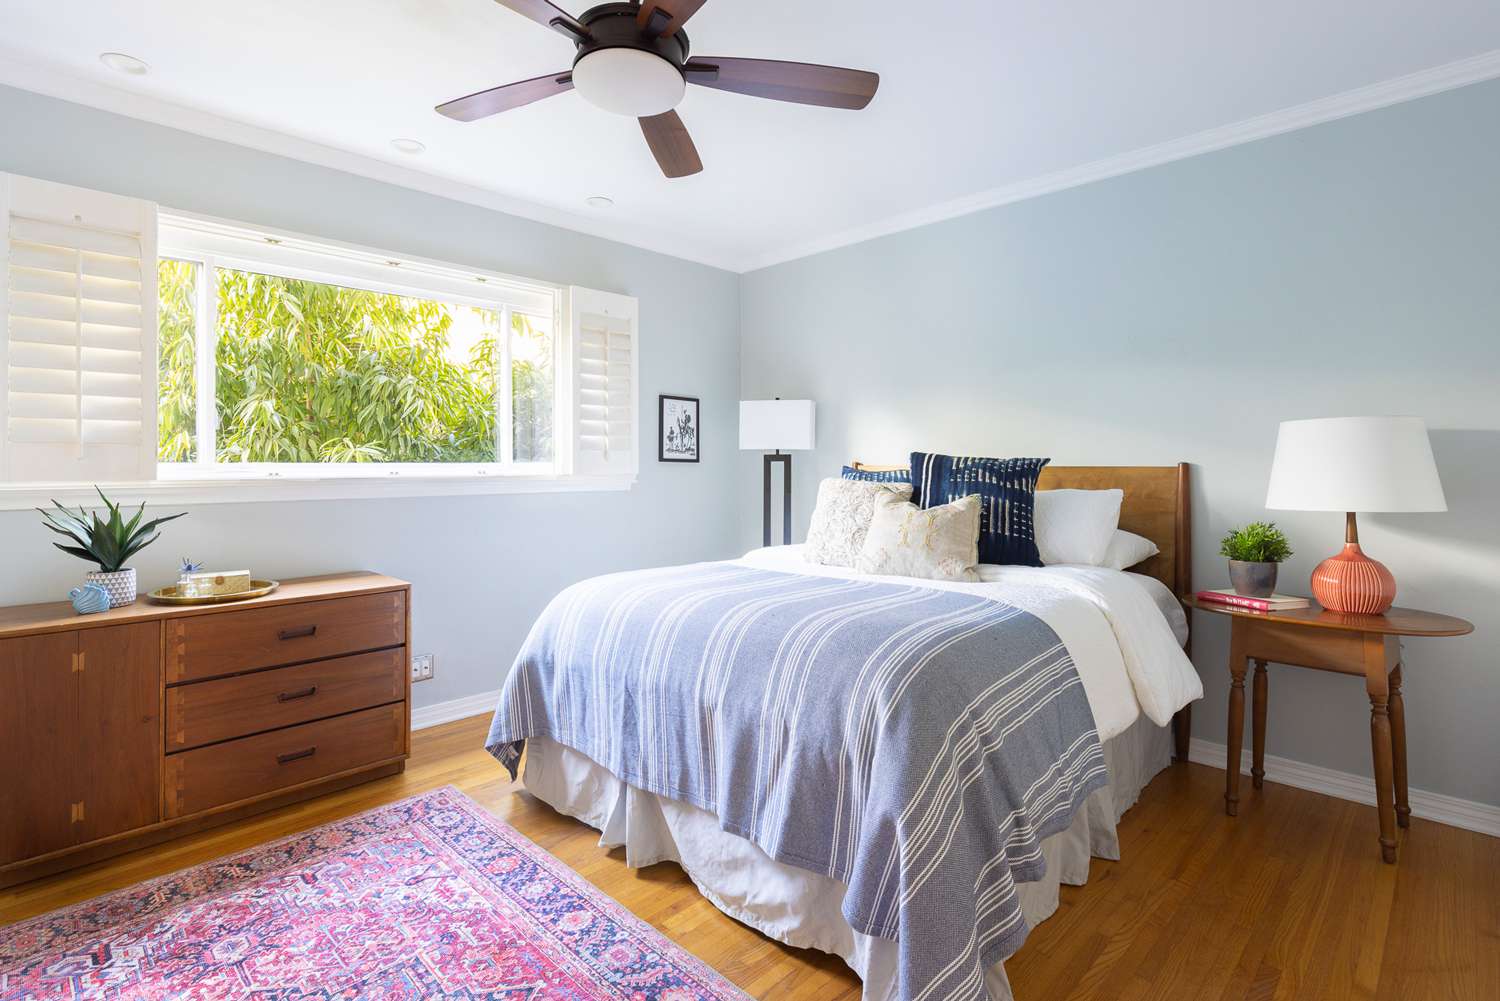 Schlafzimmer mit hellblauen Wänden und natürlichem Licht, das durch das Fenster einfällt